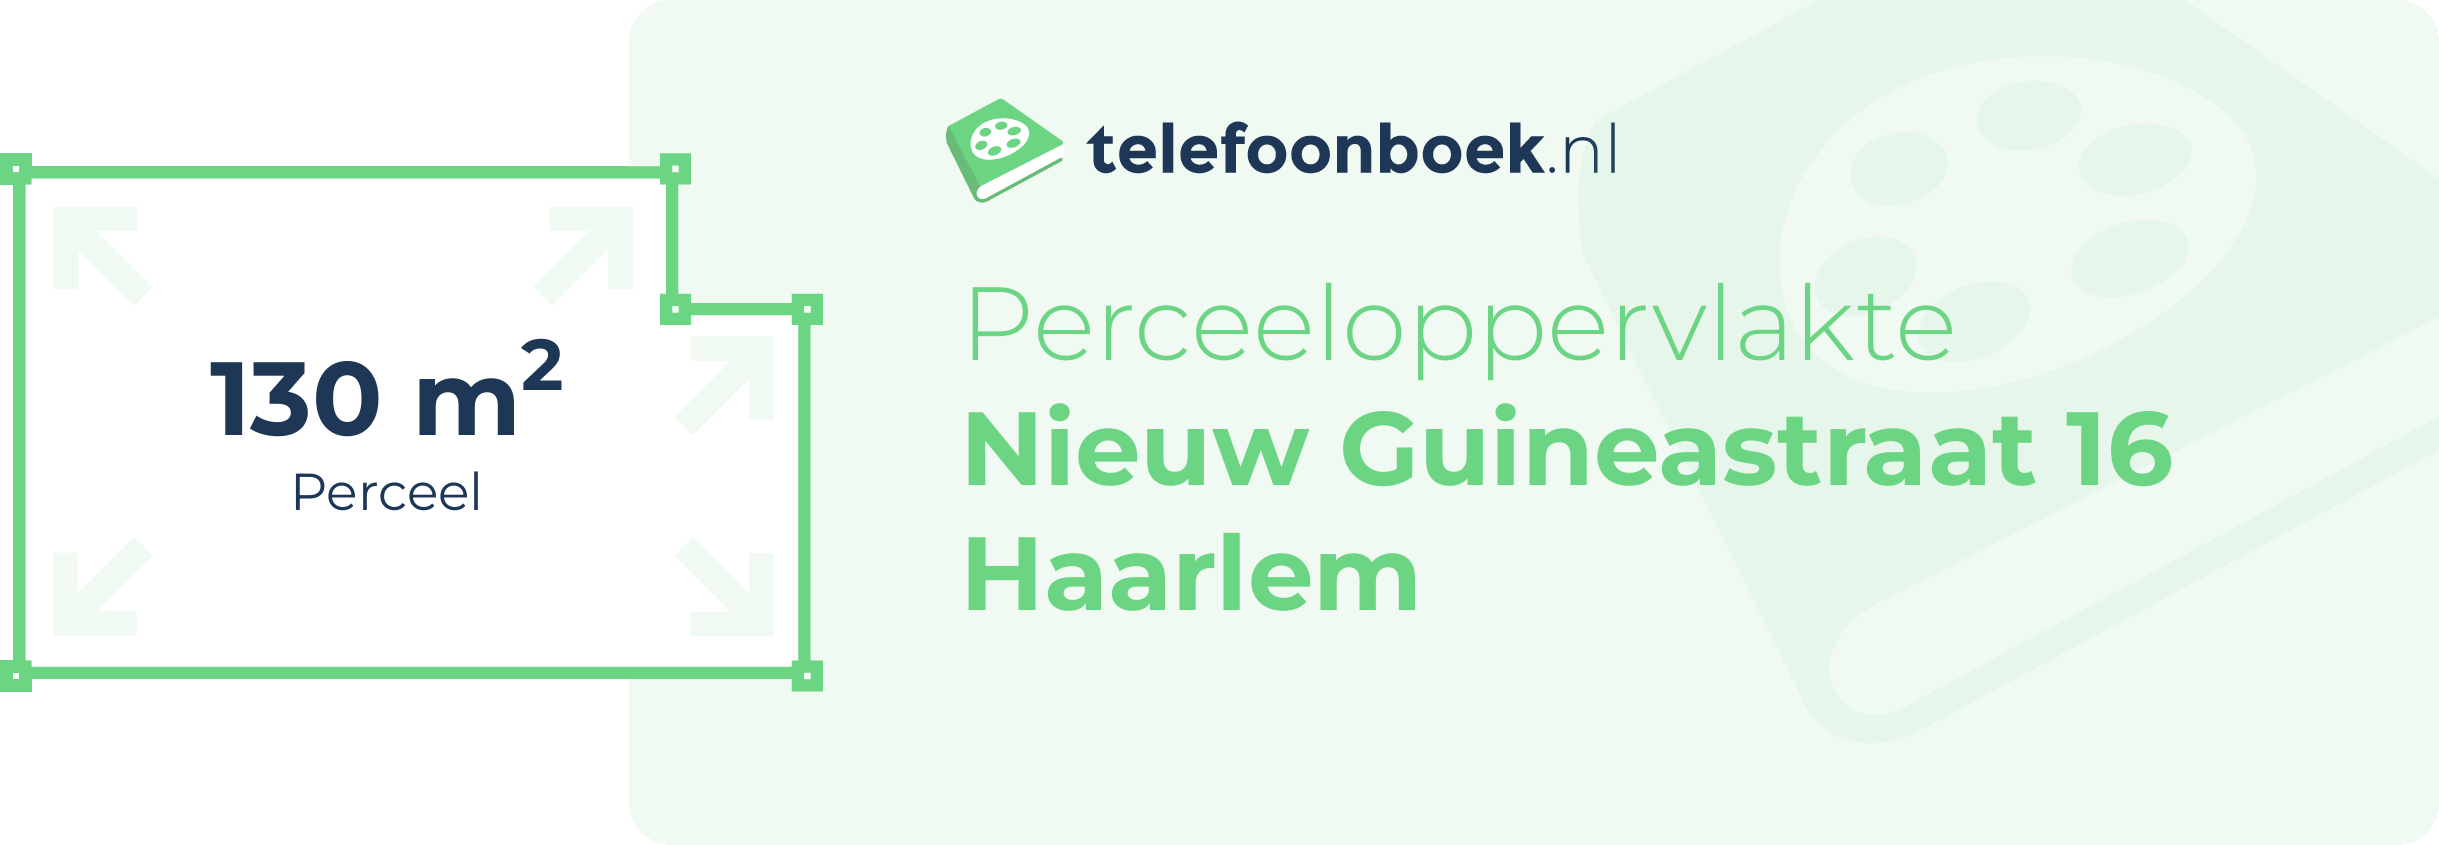 Perceeloppervlakte Nieuw Guineastraat 16 Haarlem